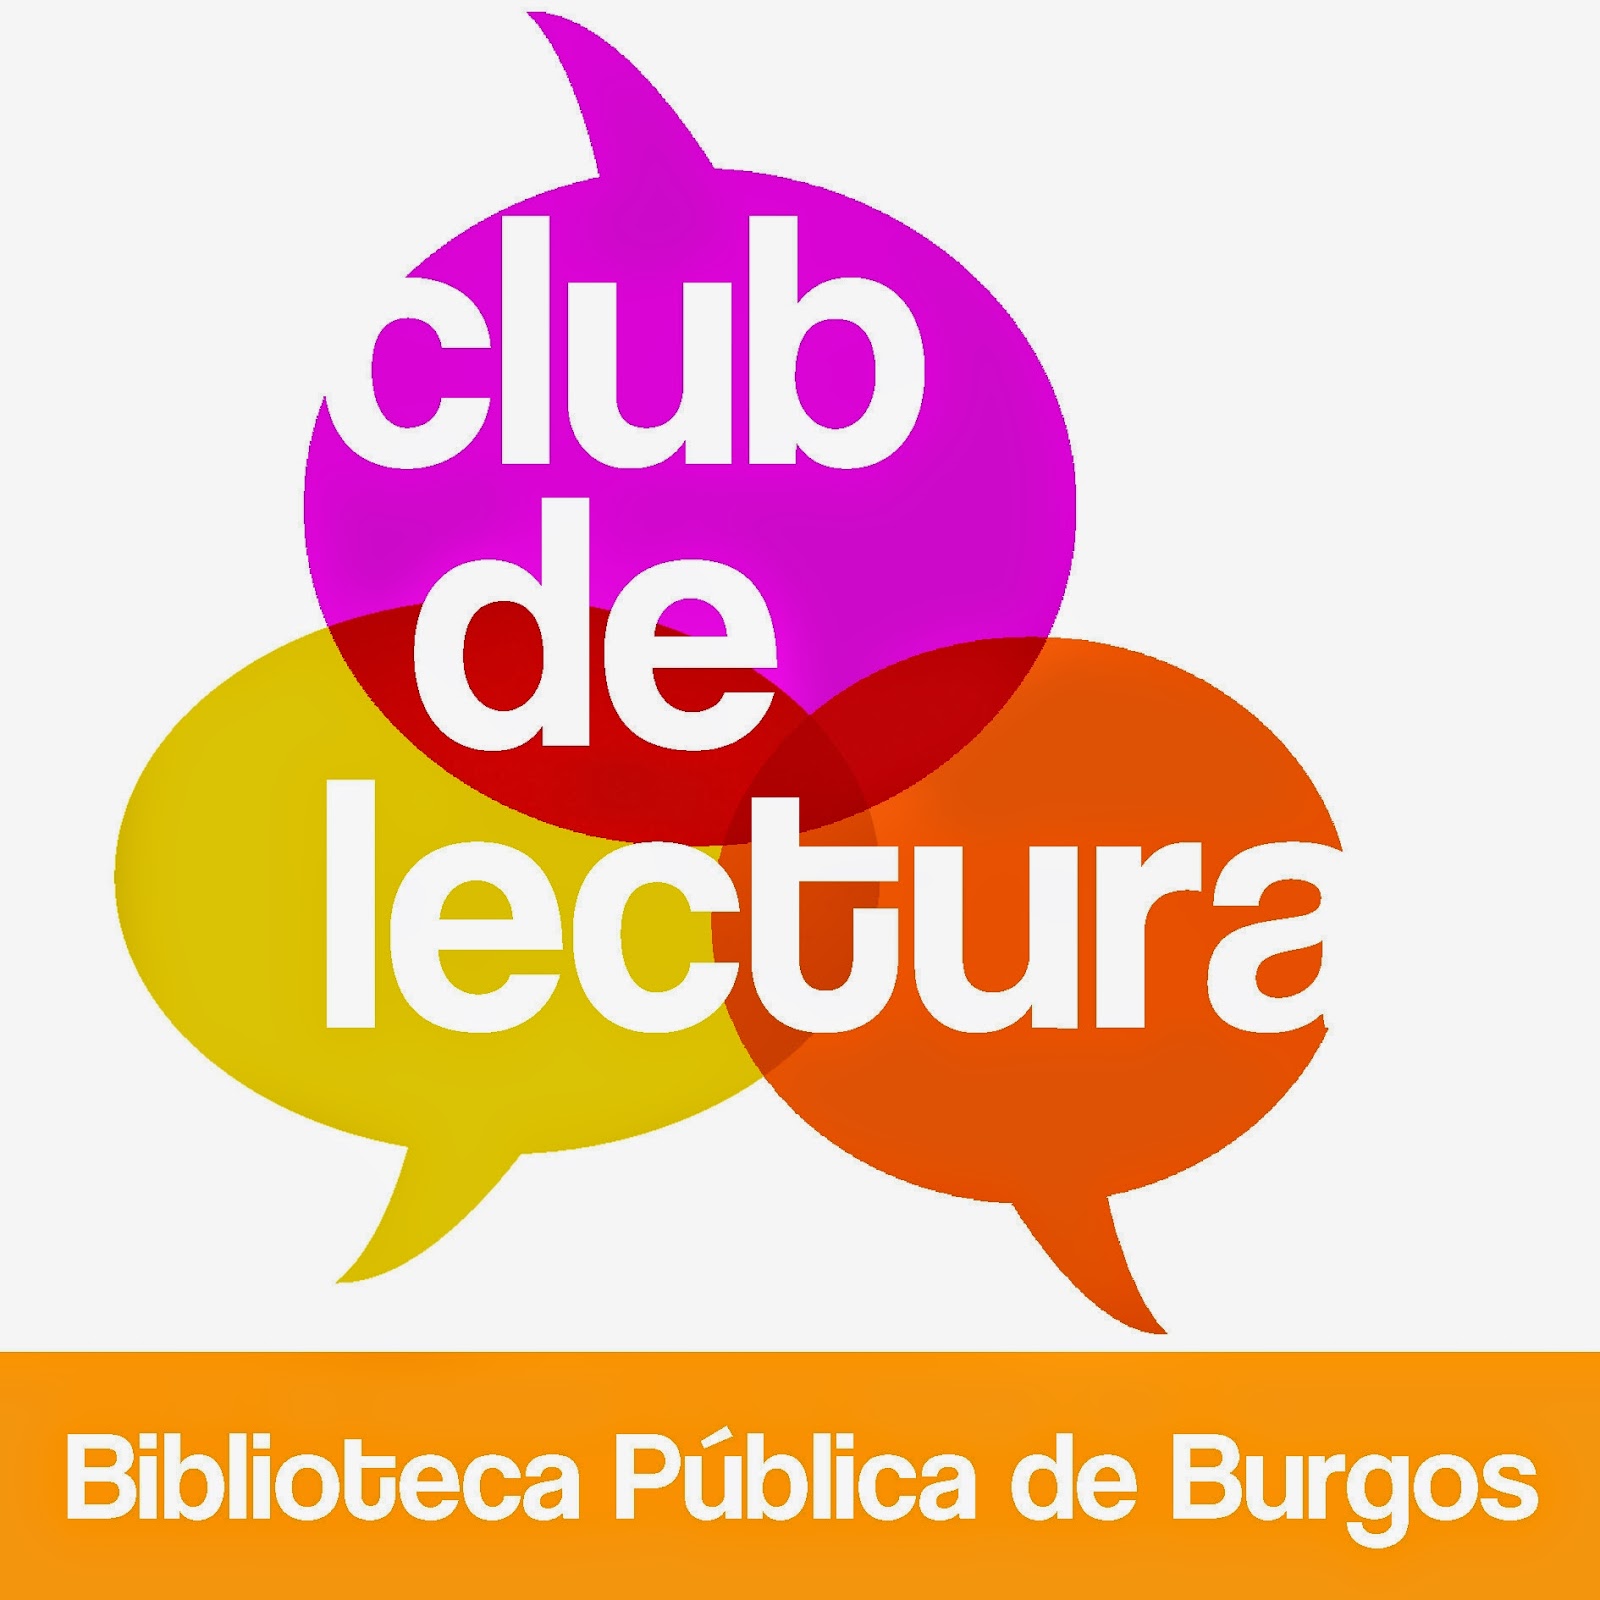 Clubes de lectura de la Biblioteca Pública de Burgos: Nuestros clubes